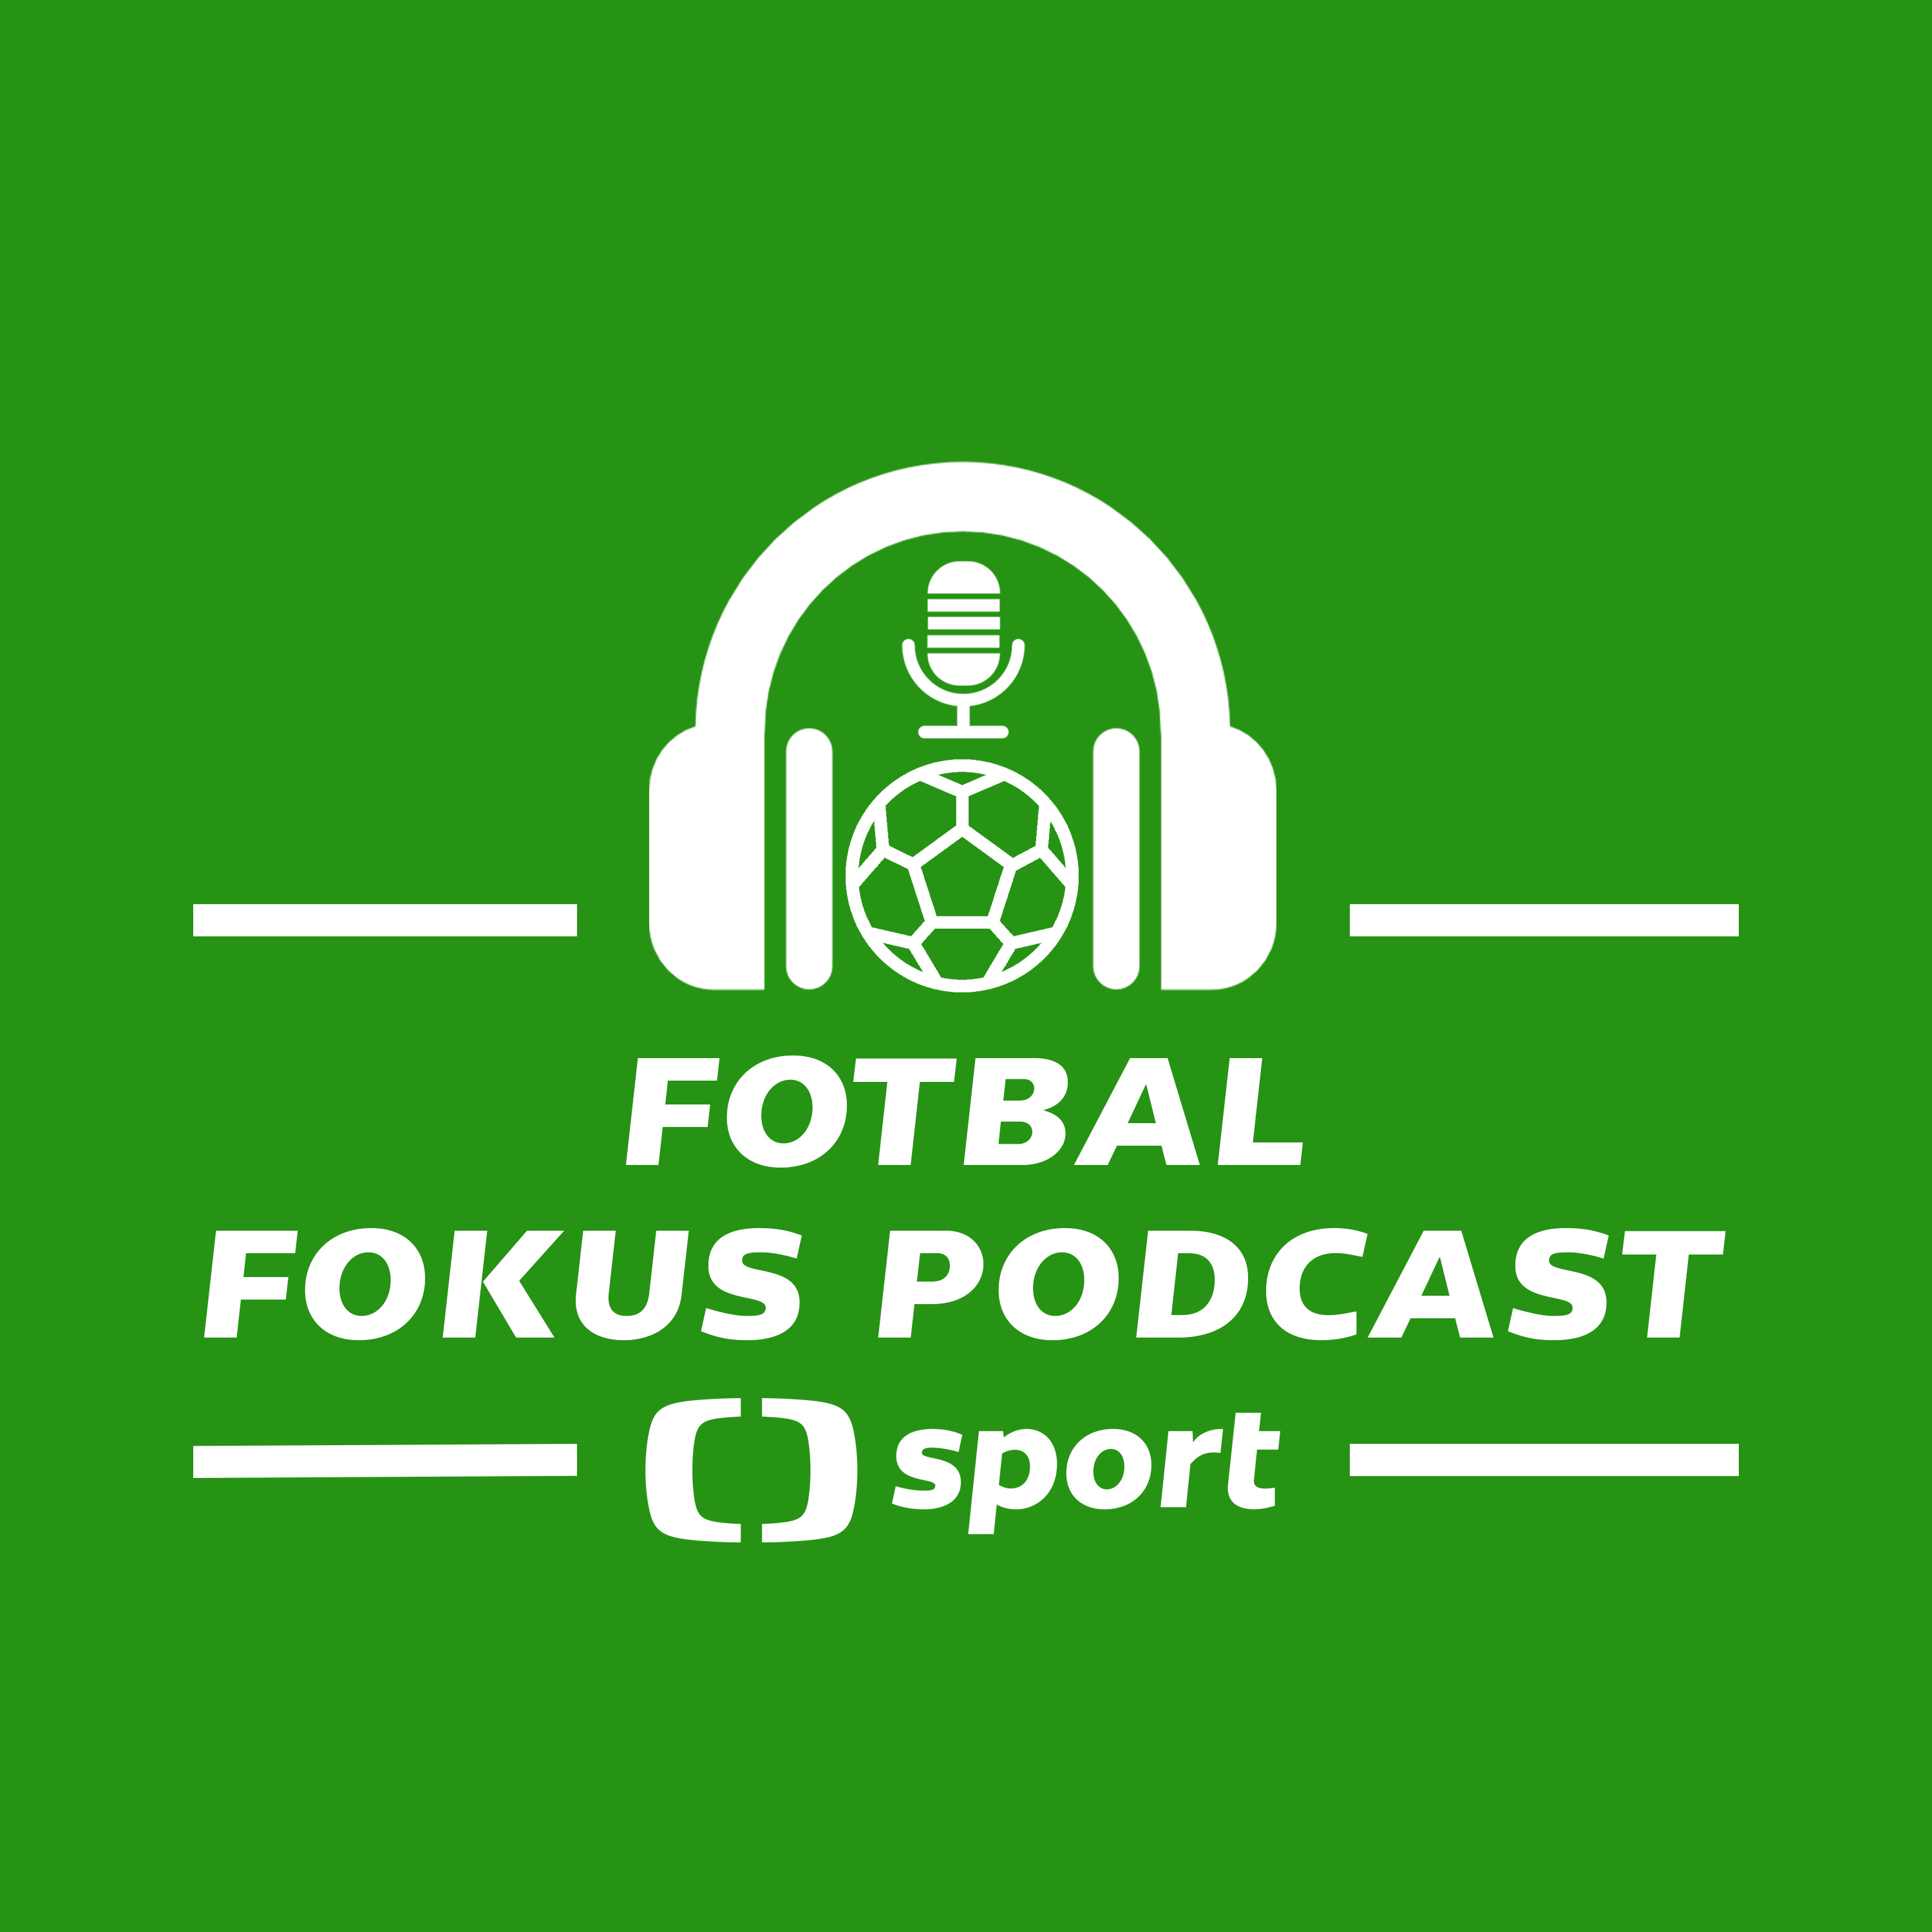 Fotbal fokus podcast: Projde český tým ze skupiny? + mlžení kolem Sadílka, tipy na Euro, sága Priske